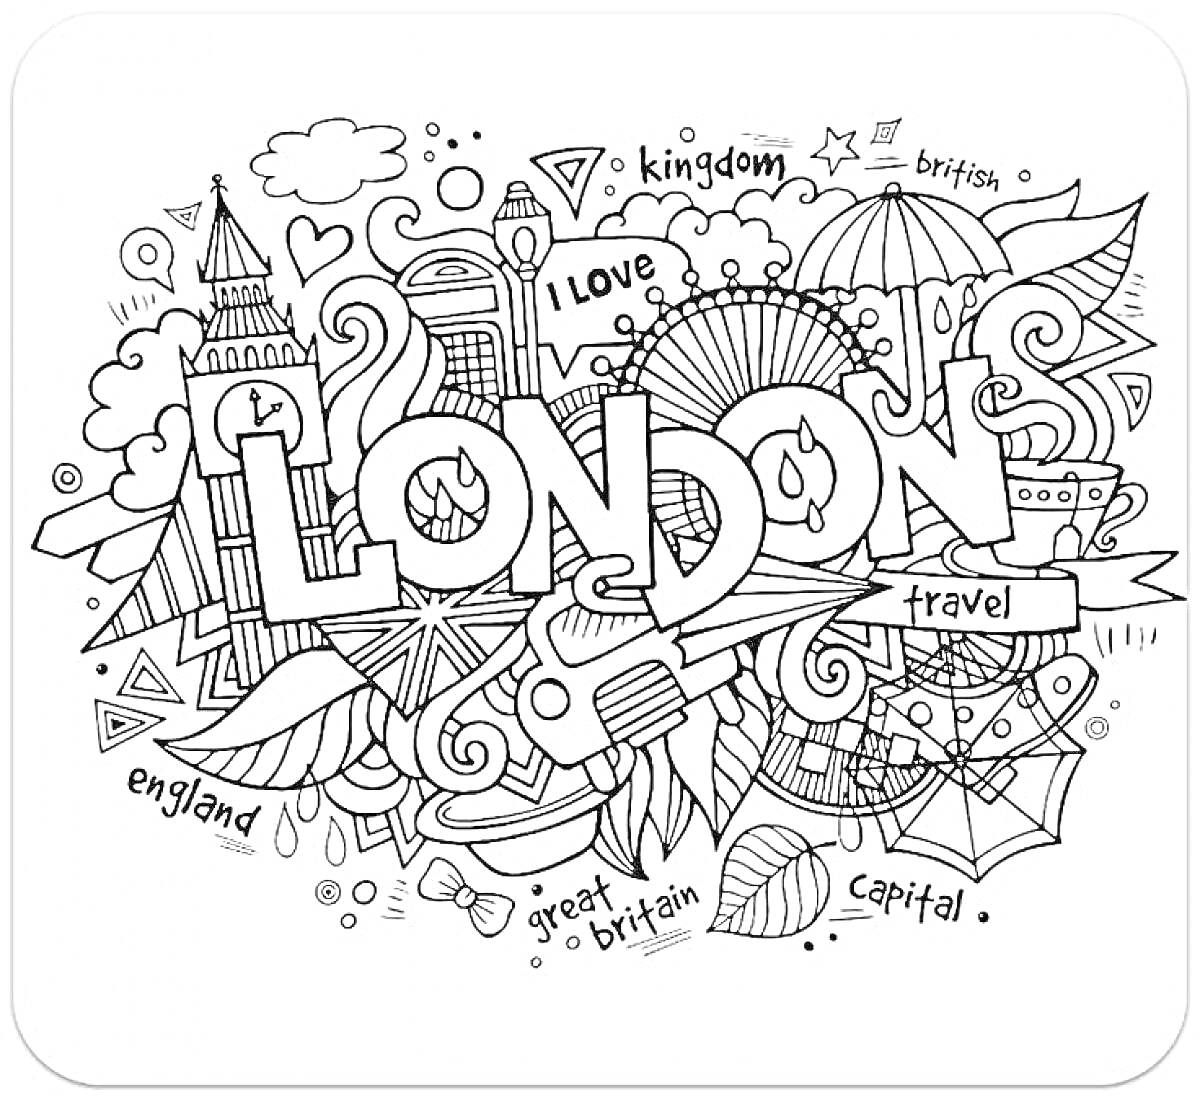 Лондон с элементами облаков, зонтиков, Биг-Бена, кубков, крыльев, музыкальных нот, звезд, флагов и надписей 